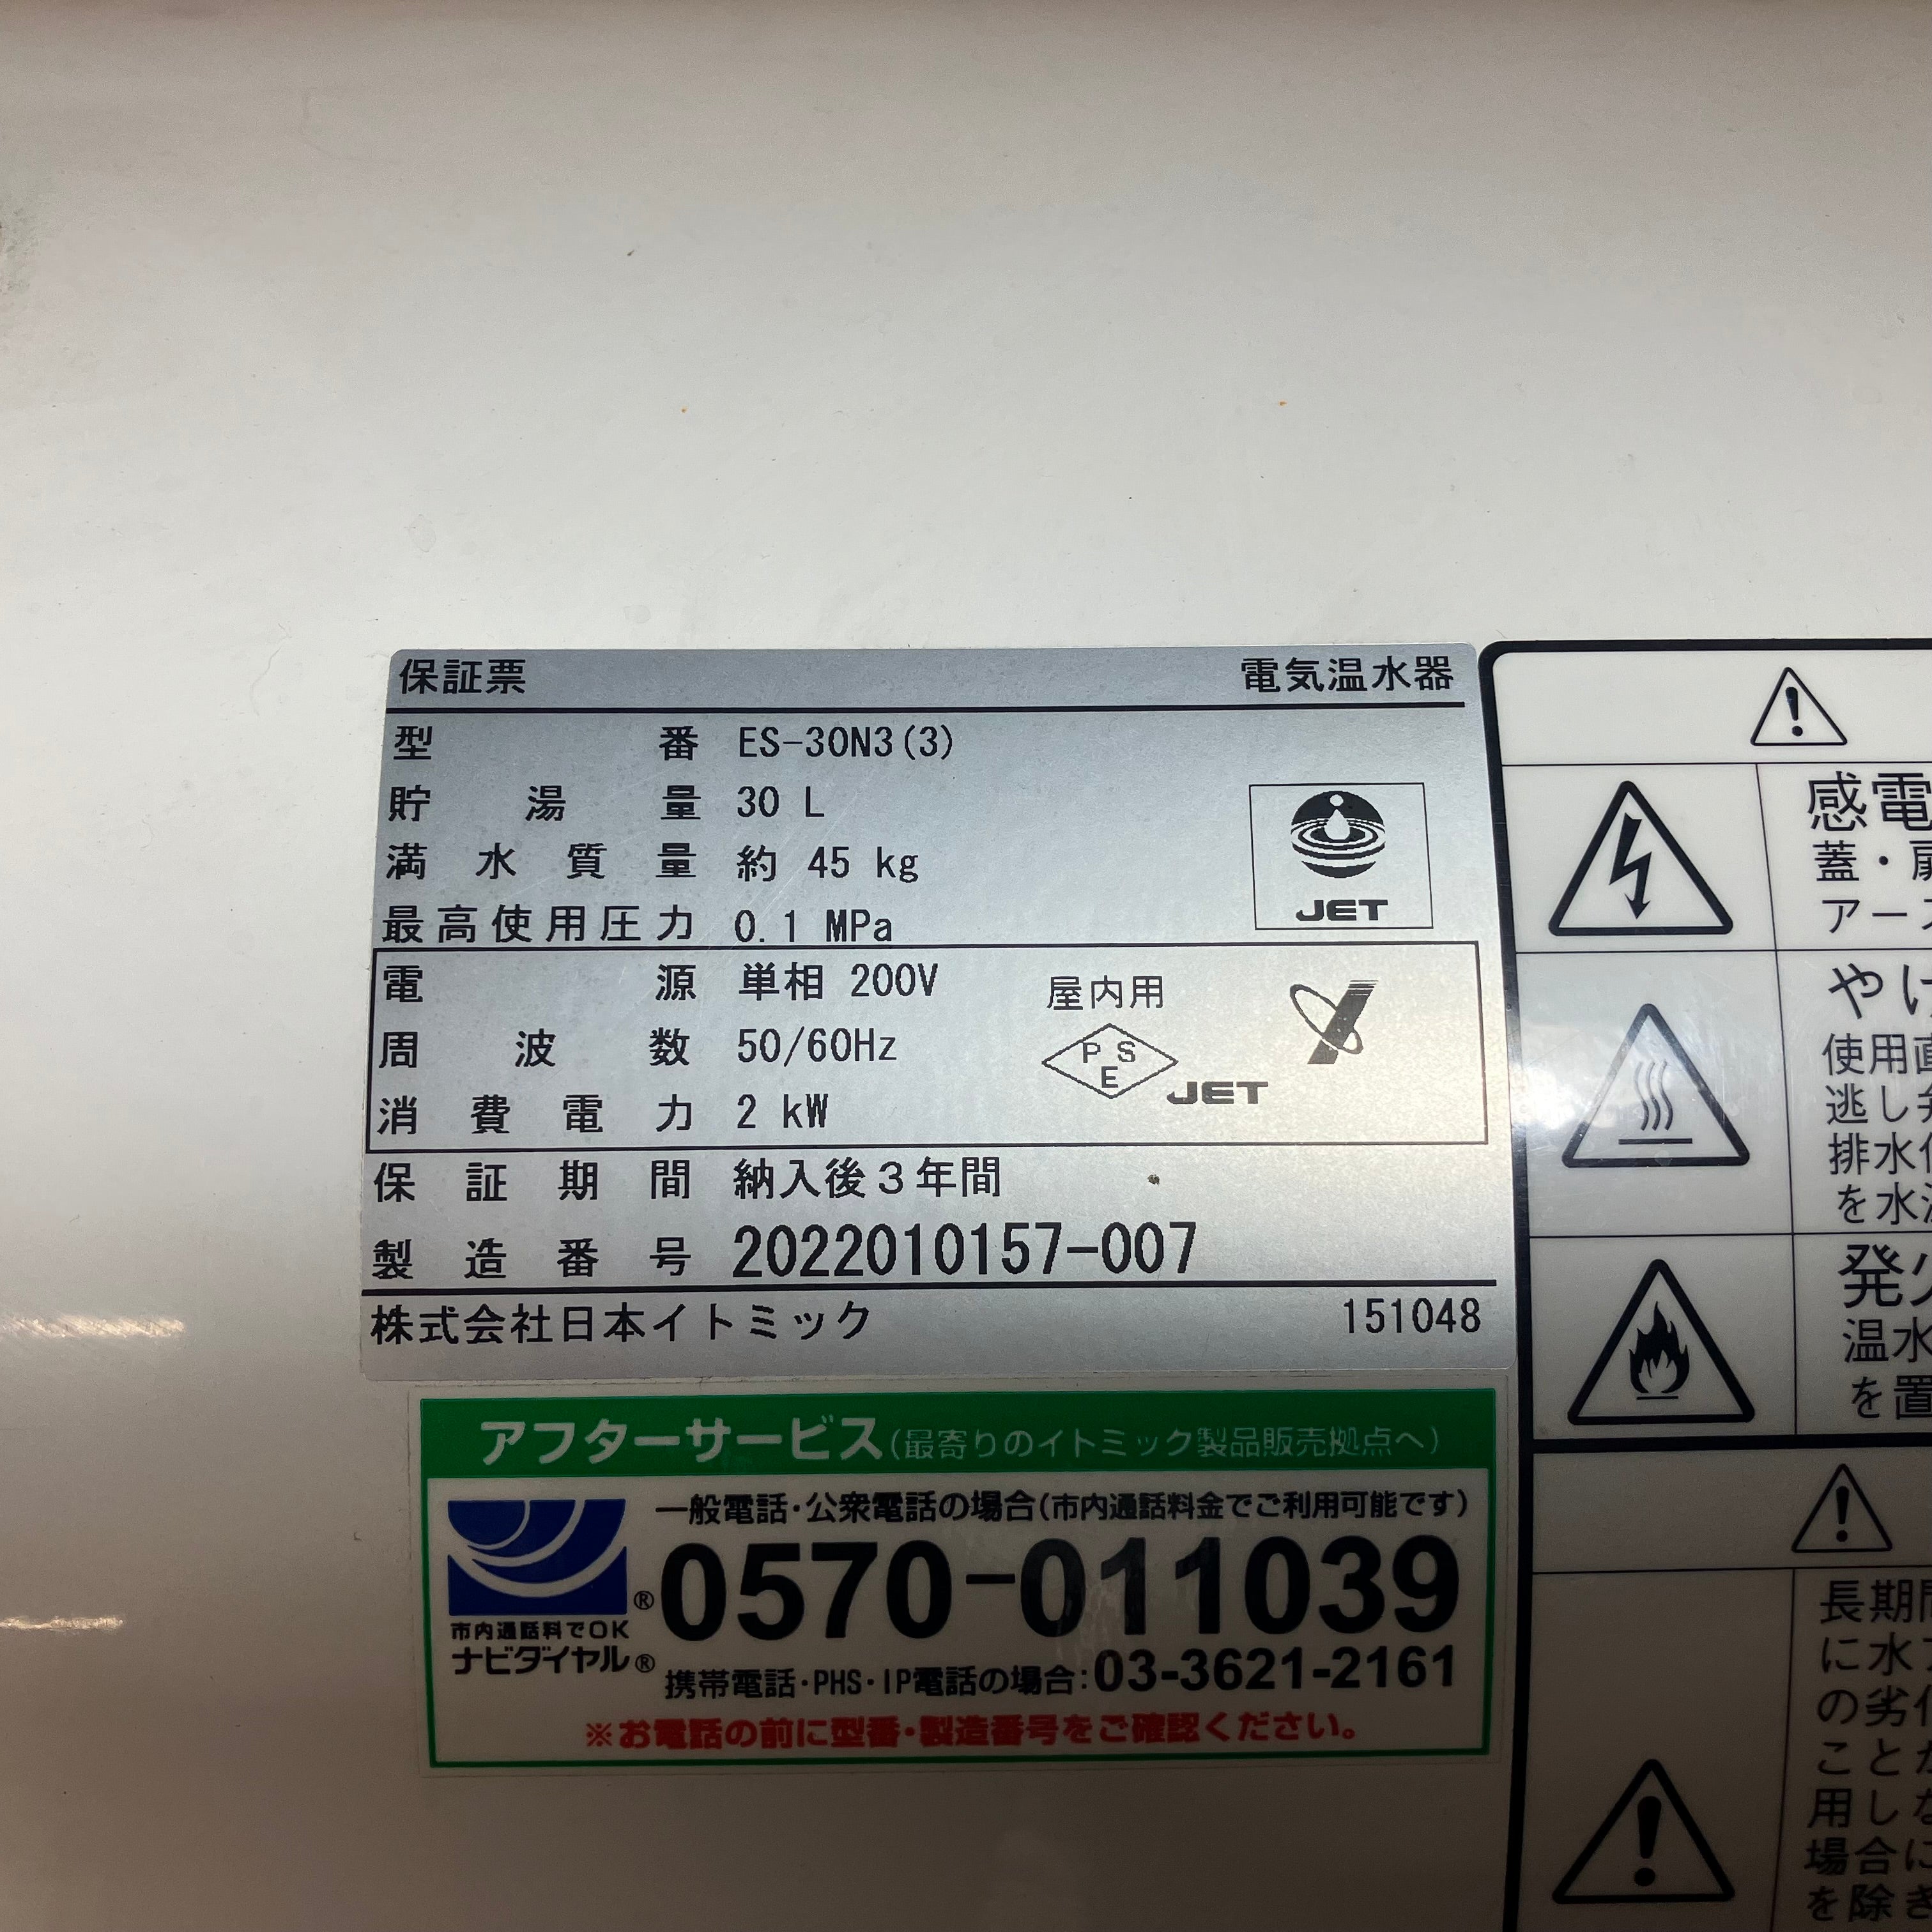 日本イトミック 床置き貯湯型 小型電気温水機 ES-N3(3) 200V仕様【川越店】 アクトツールオンラインショップ